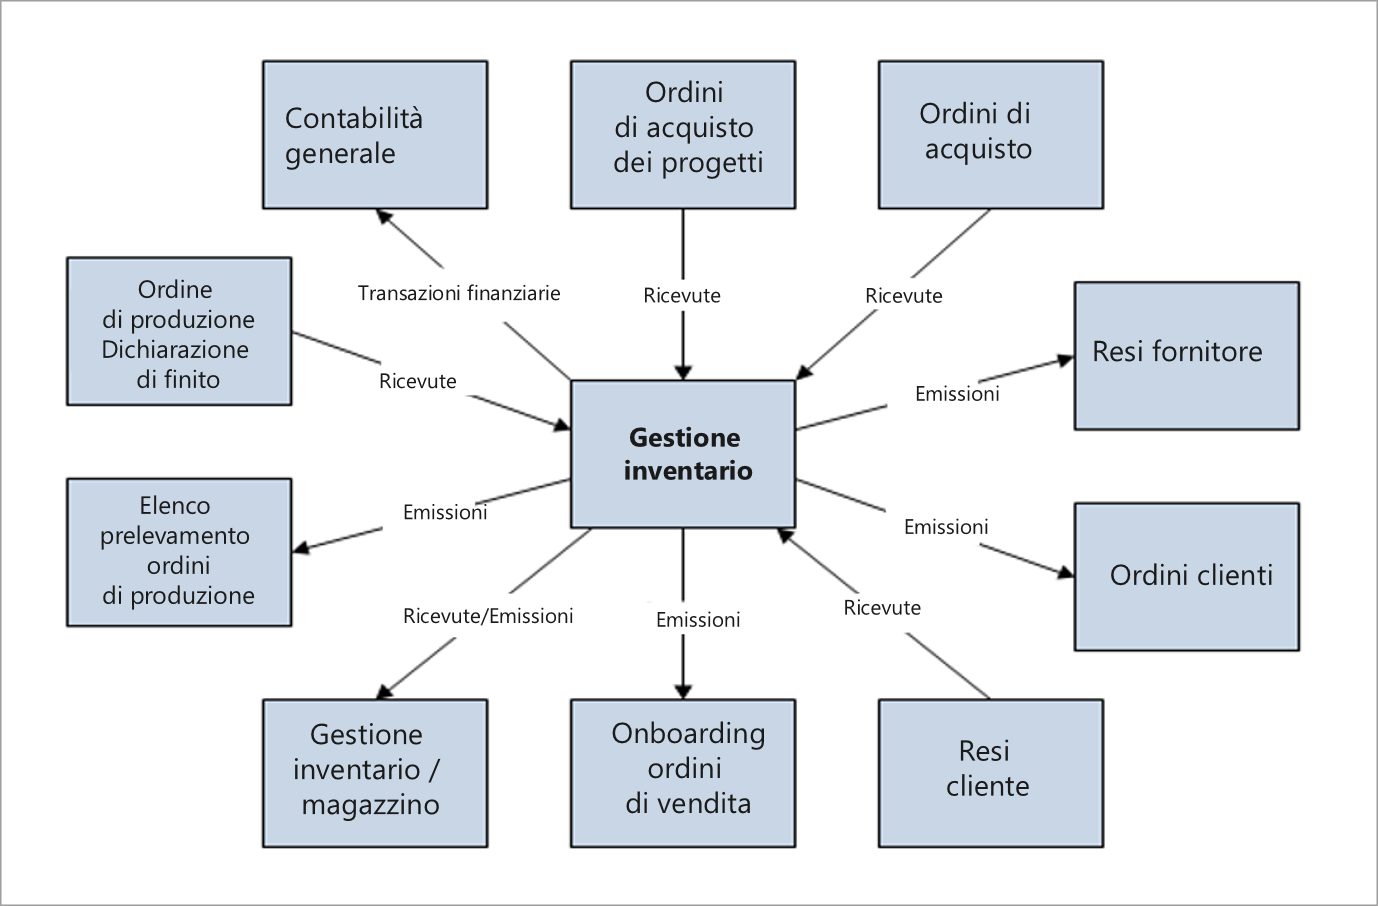 Diagramma che mostra l'integrazione degli ordini fornitore.